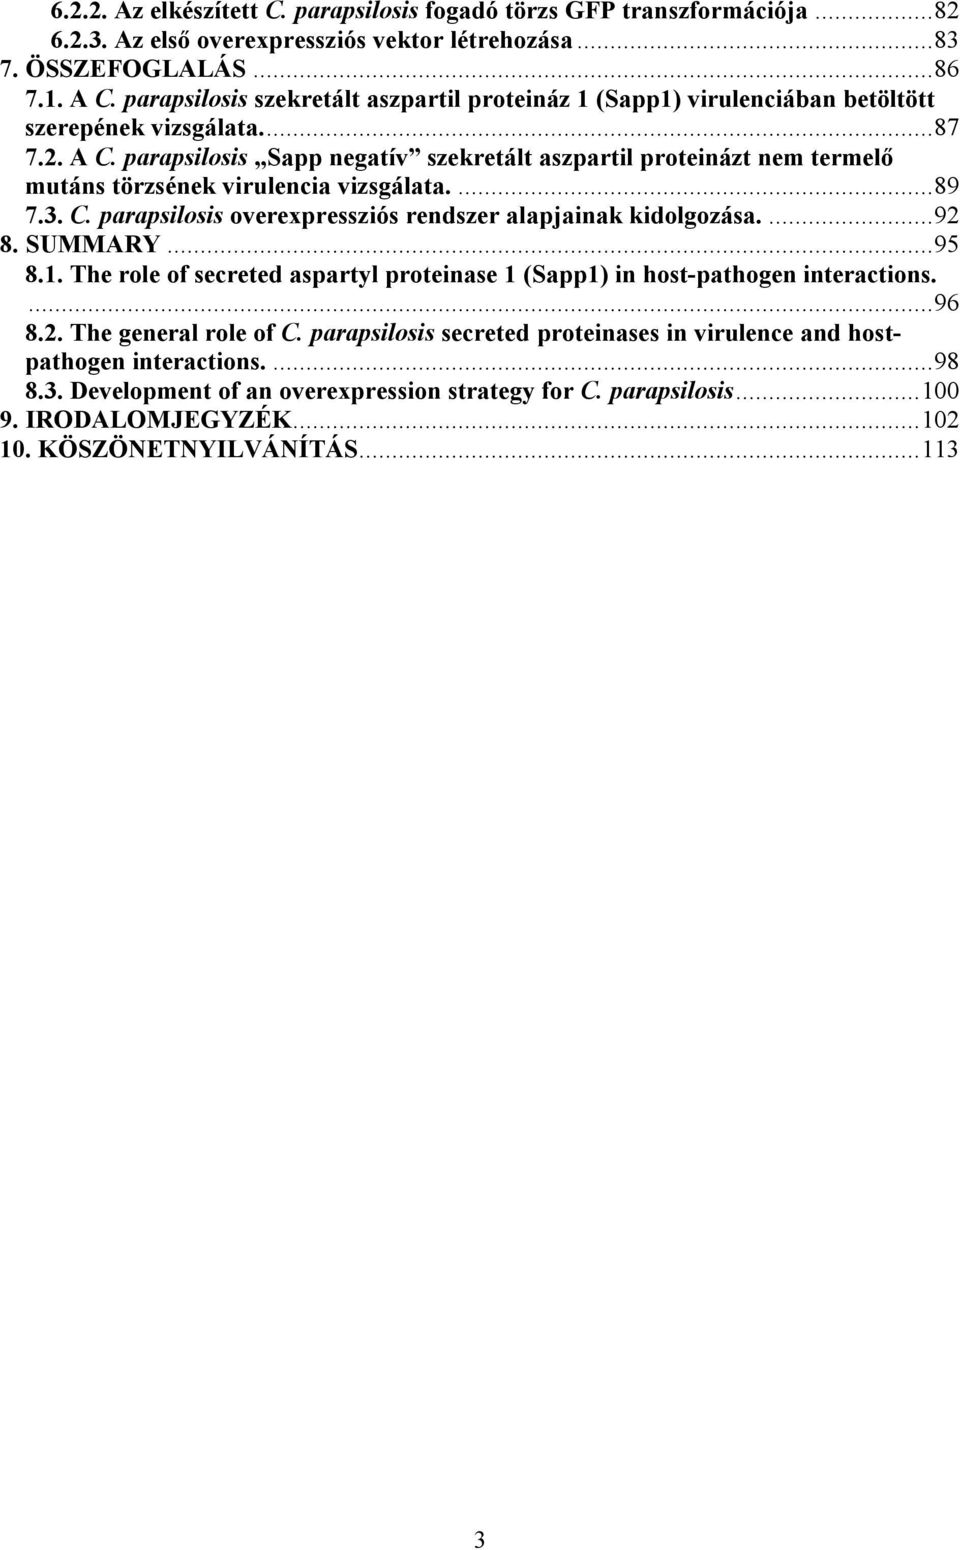 parapsilosis Sapp negatív szekretált aszpartil proteinázt nem termelő mutáns törzsének virulencia vizsgálata....89 7.3. C. parapsilosis overexpressziós rendszer alapjainak kidolgozása....92 8.